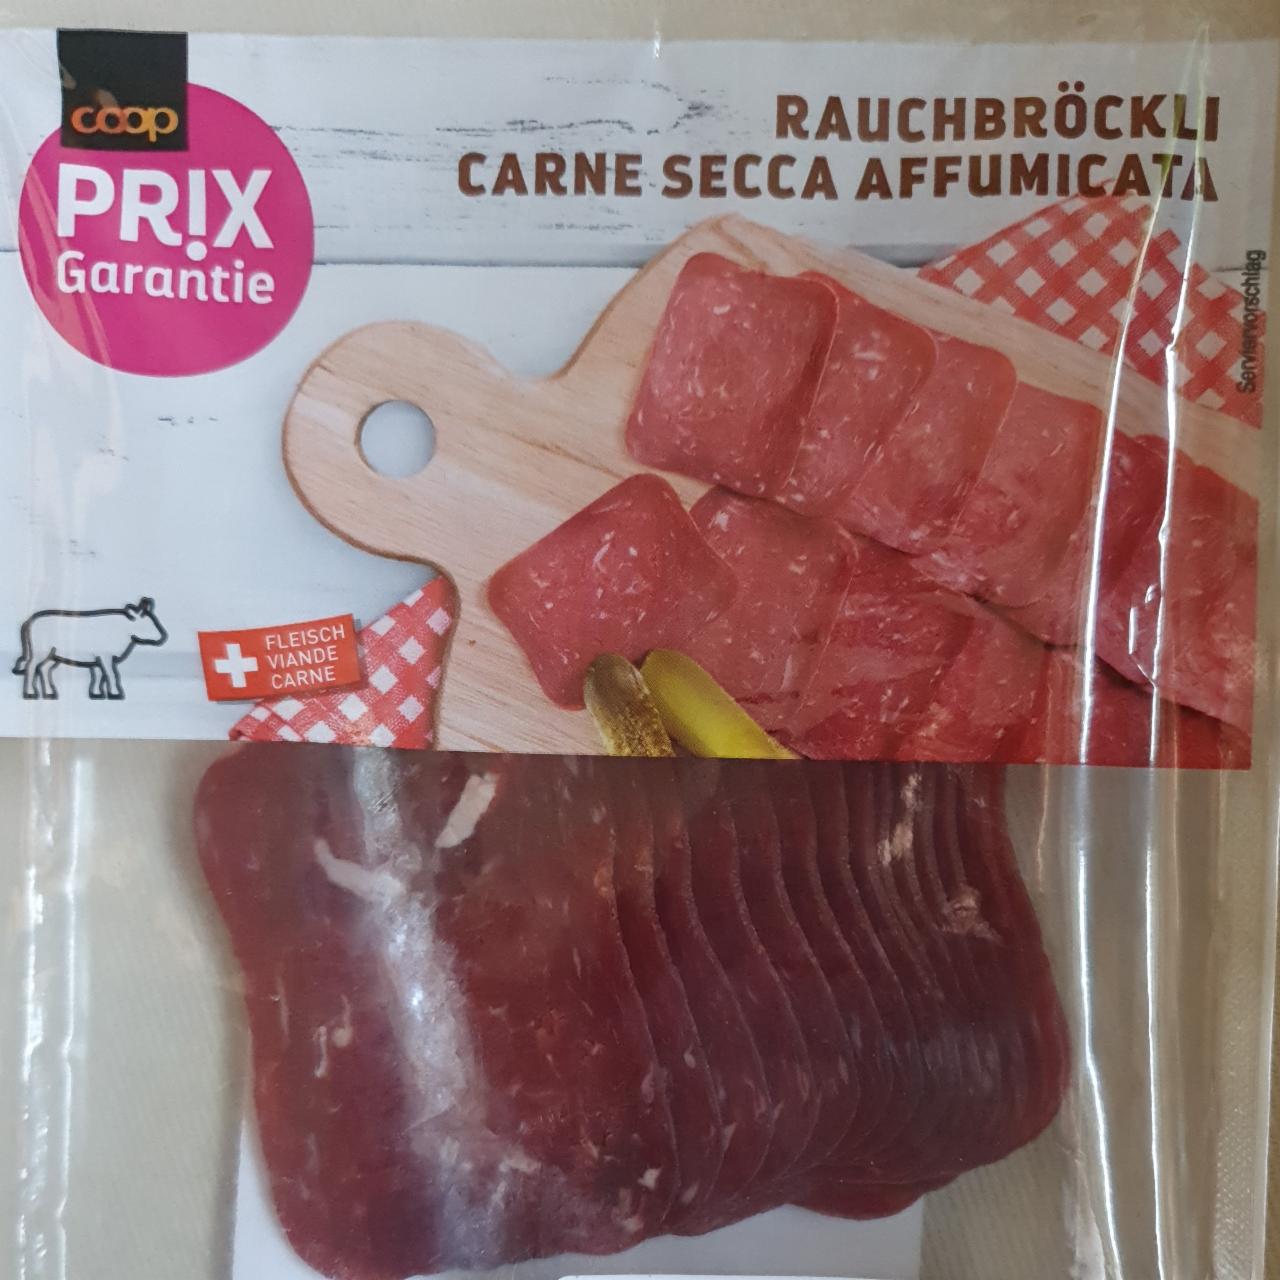 Fotografie - Carne secca affumicata Coop Prix Garantie